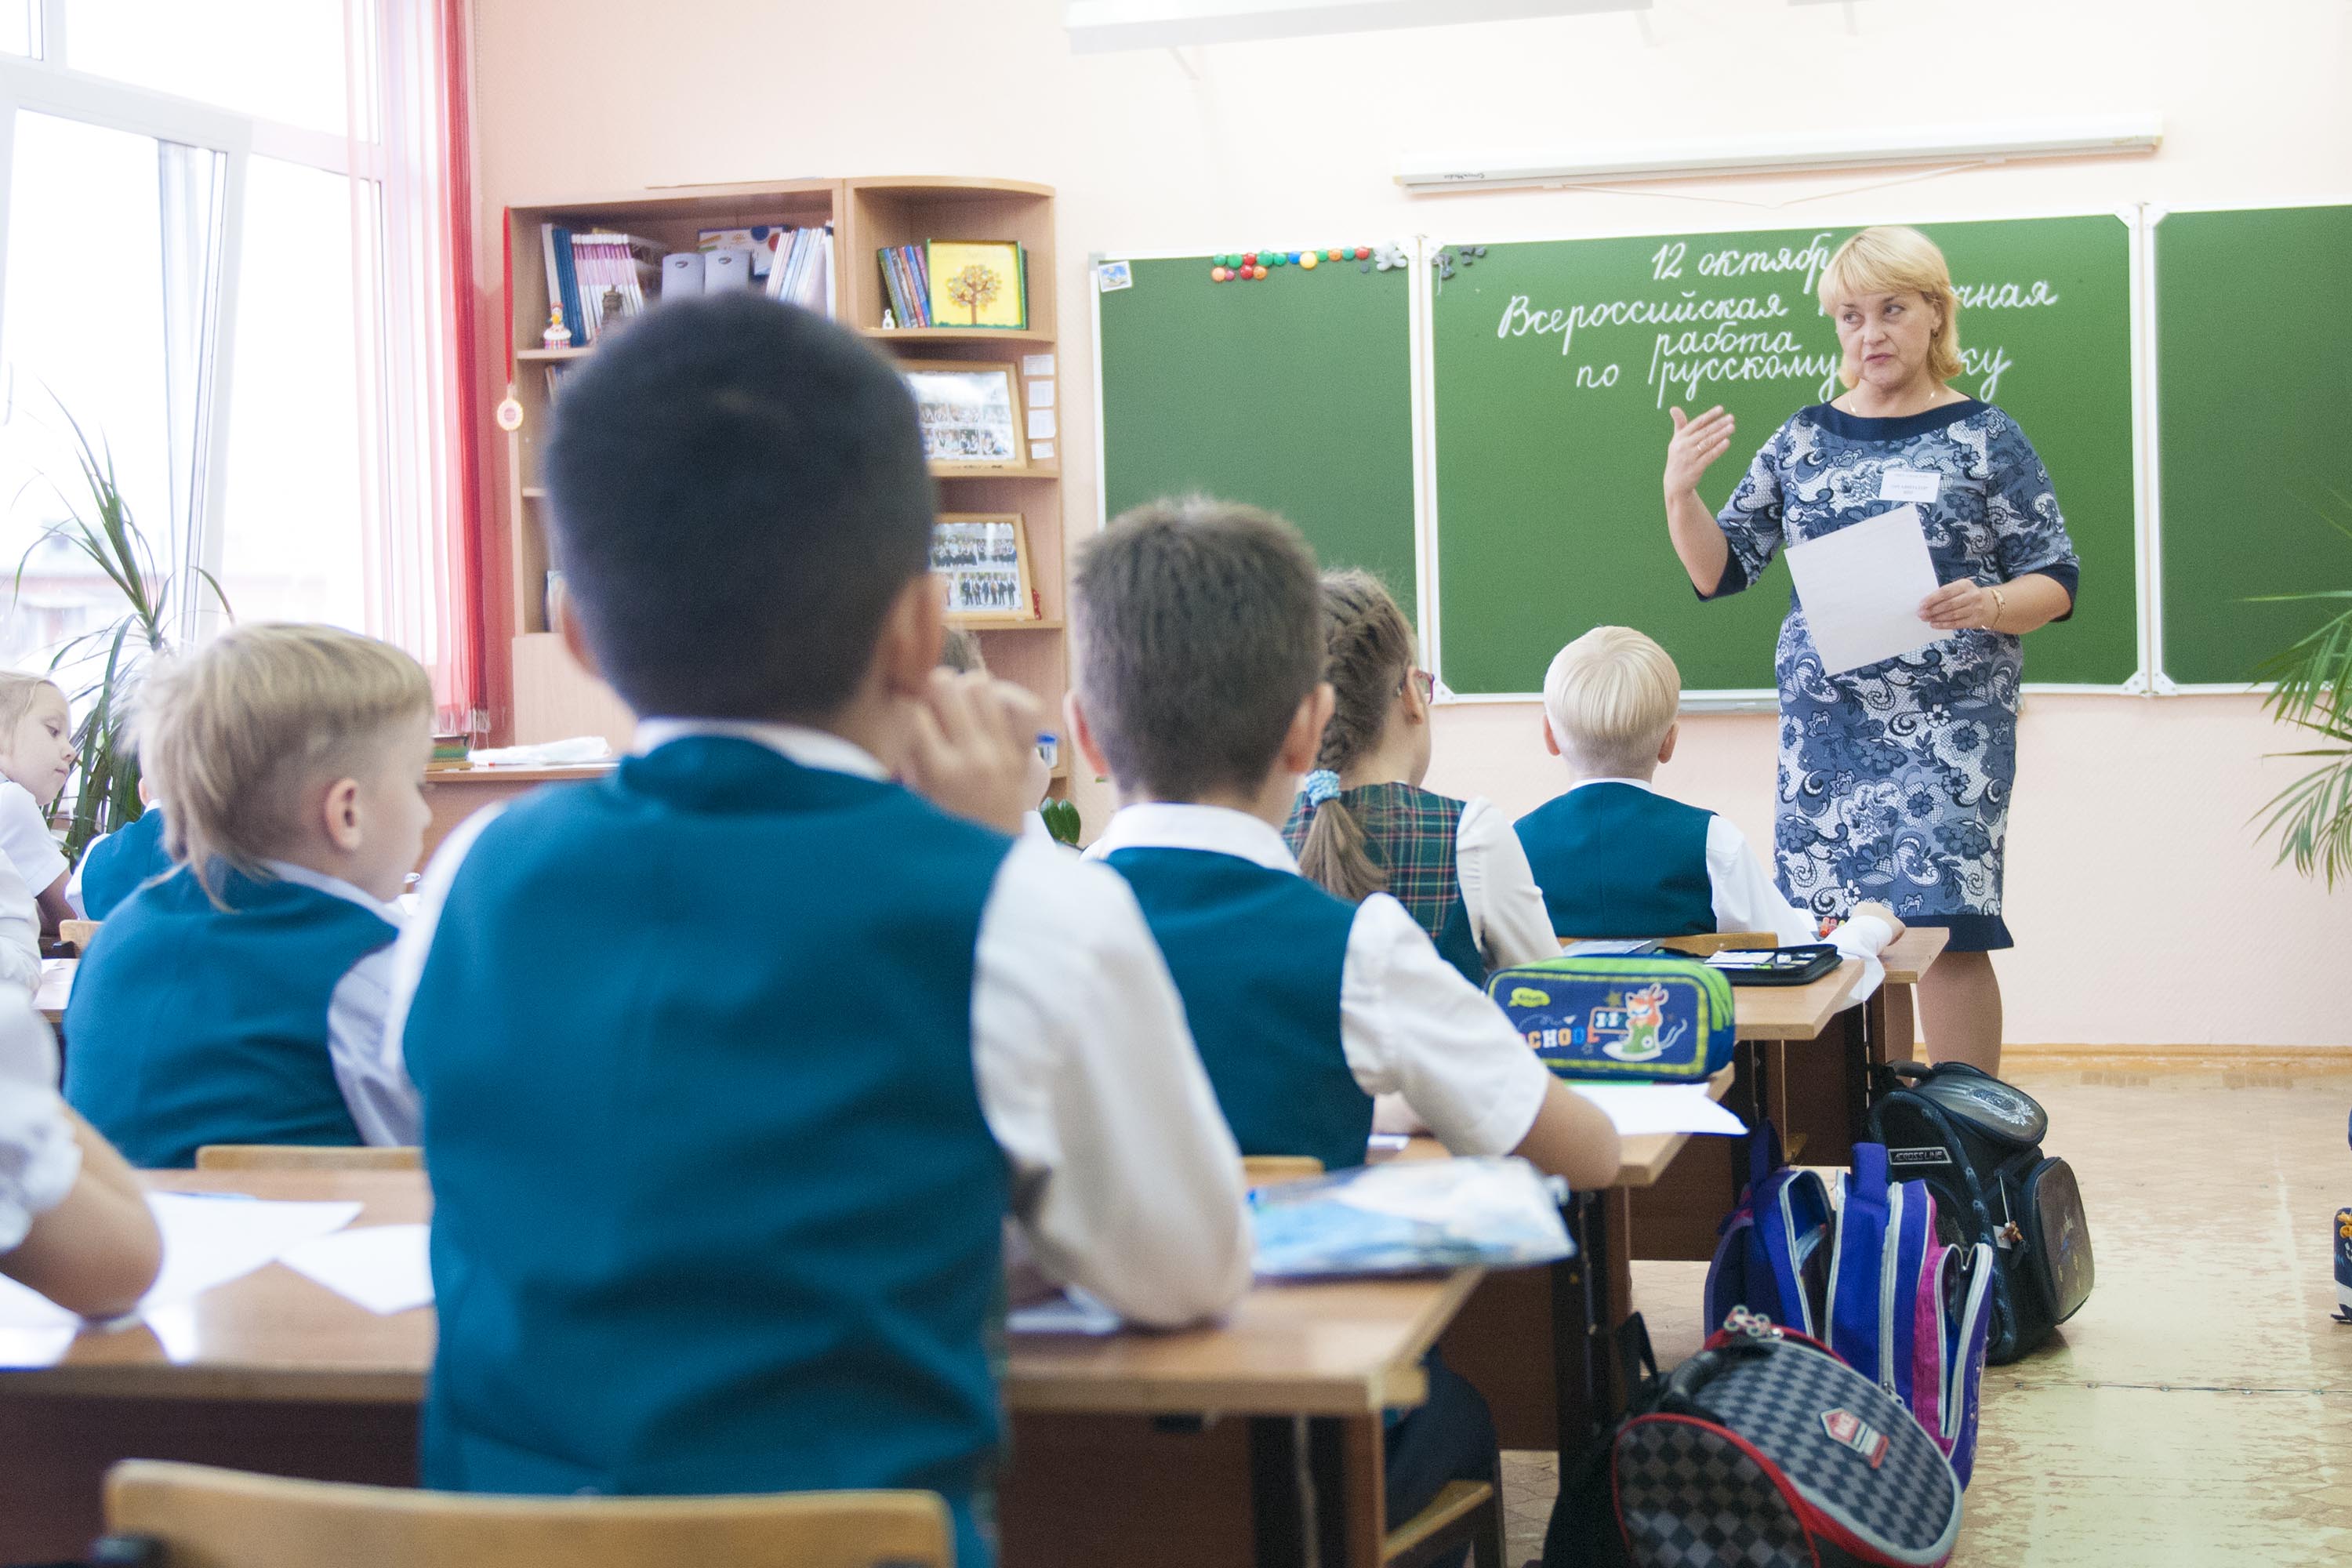  Более 100 учителей сельских школ в Кузбассе обучат основам цифрового образования